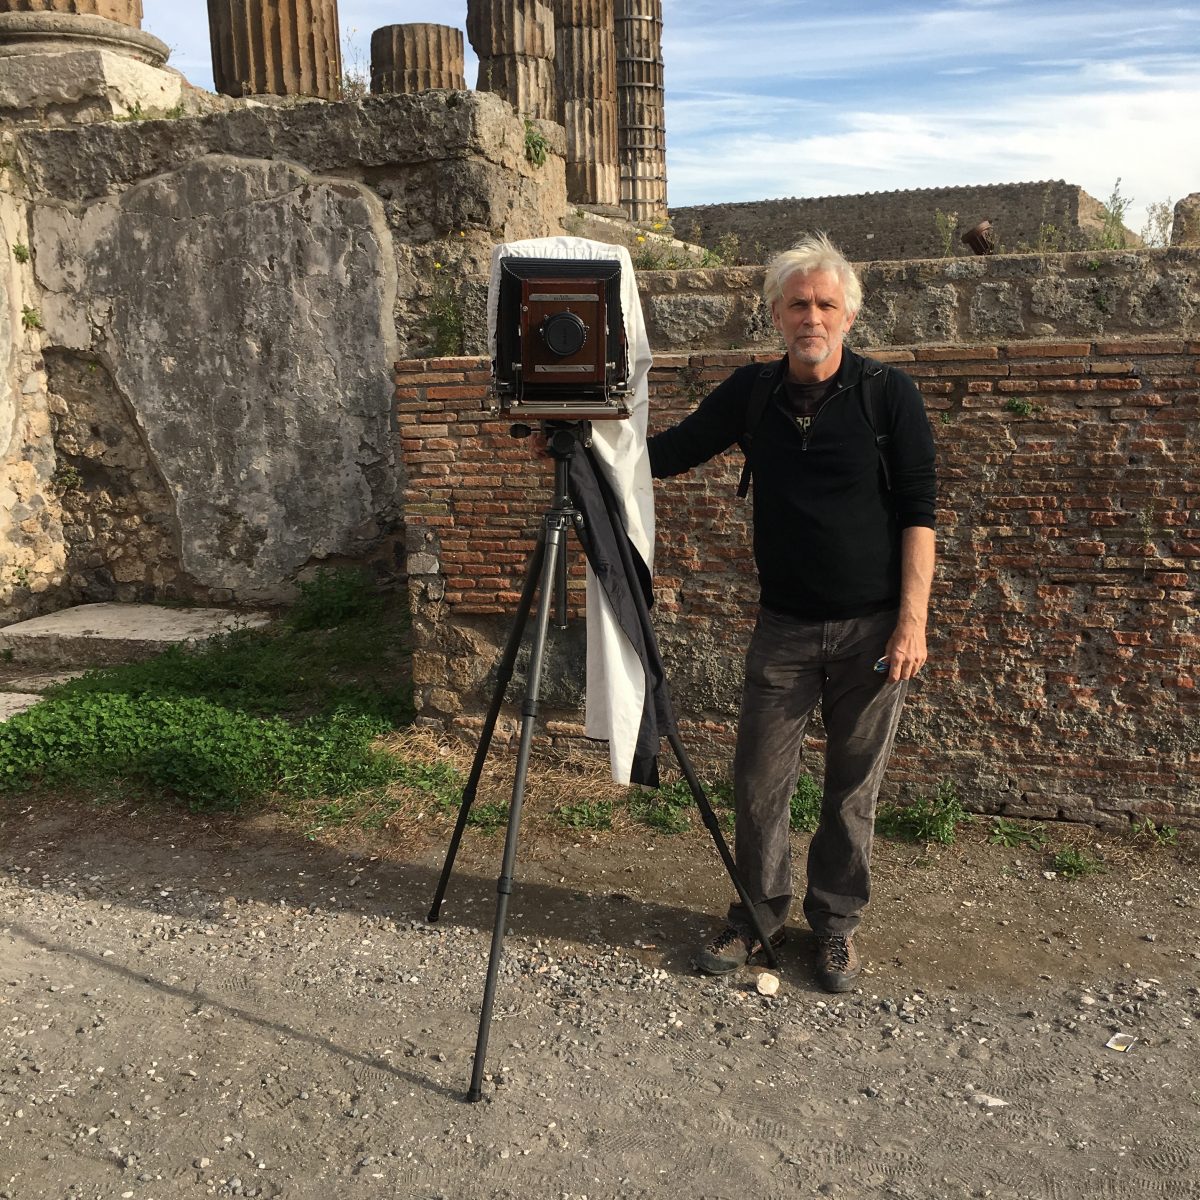 Thành phố Pompeii xuyên thời gian qua bộ ảnh của nhiếp ảnh gia William Wylie